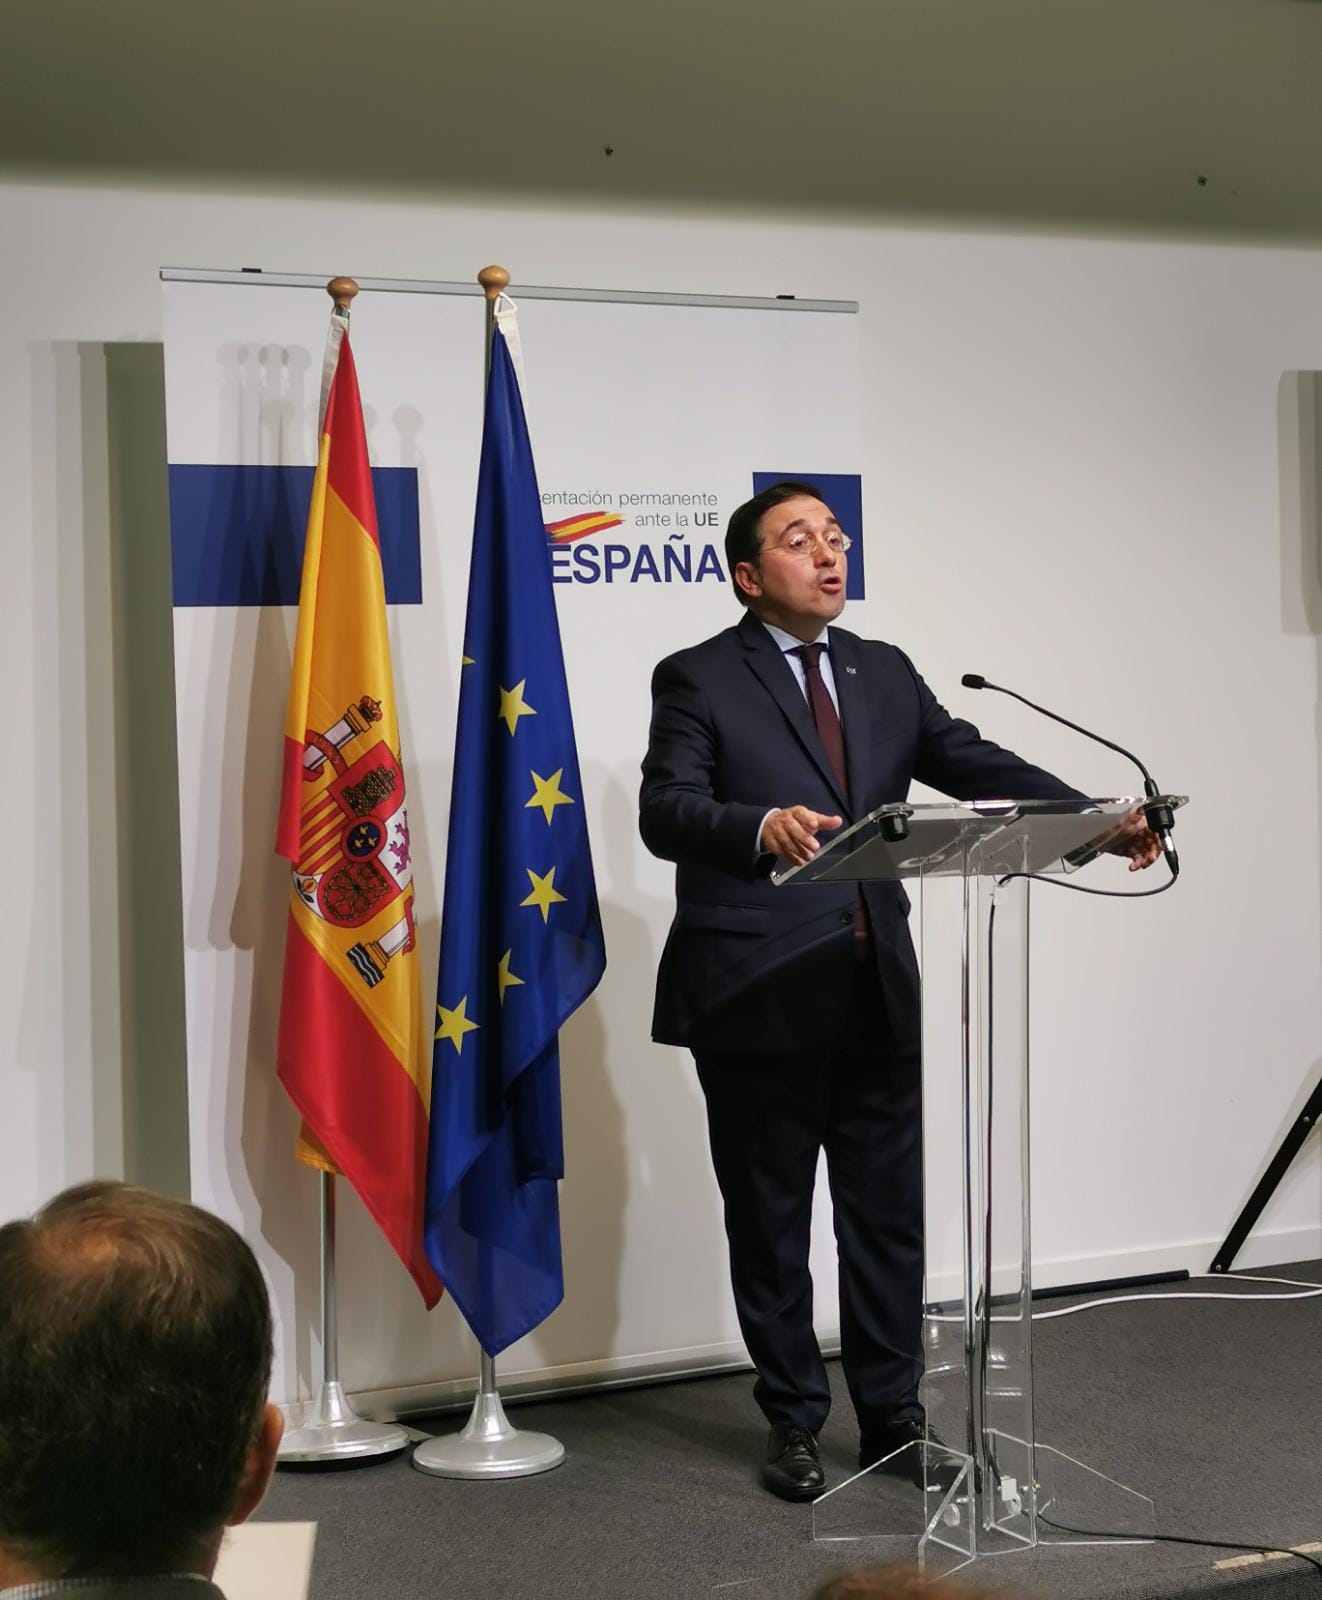 Patada adelante: el catalán en la UE sin vetos pero pendiente de una nueva reunión